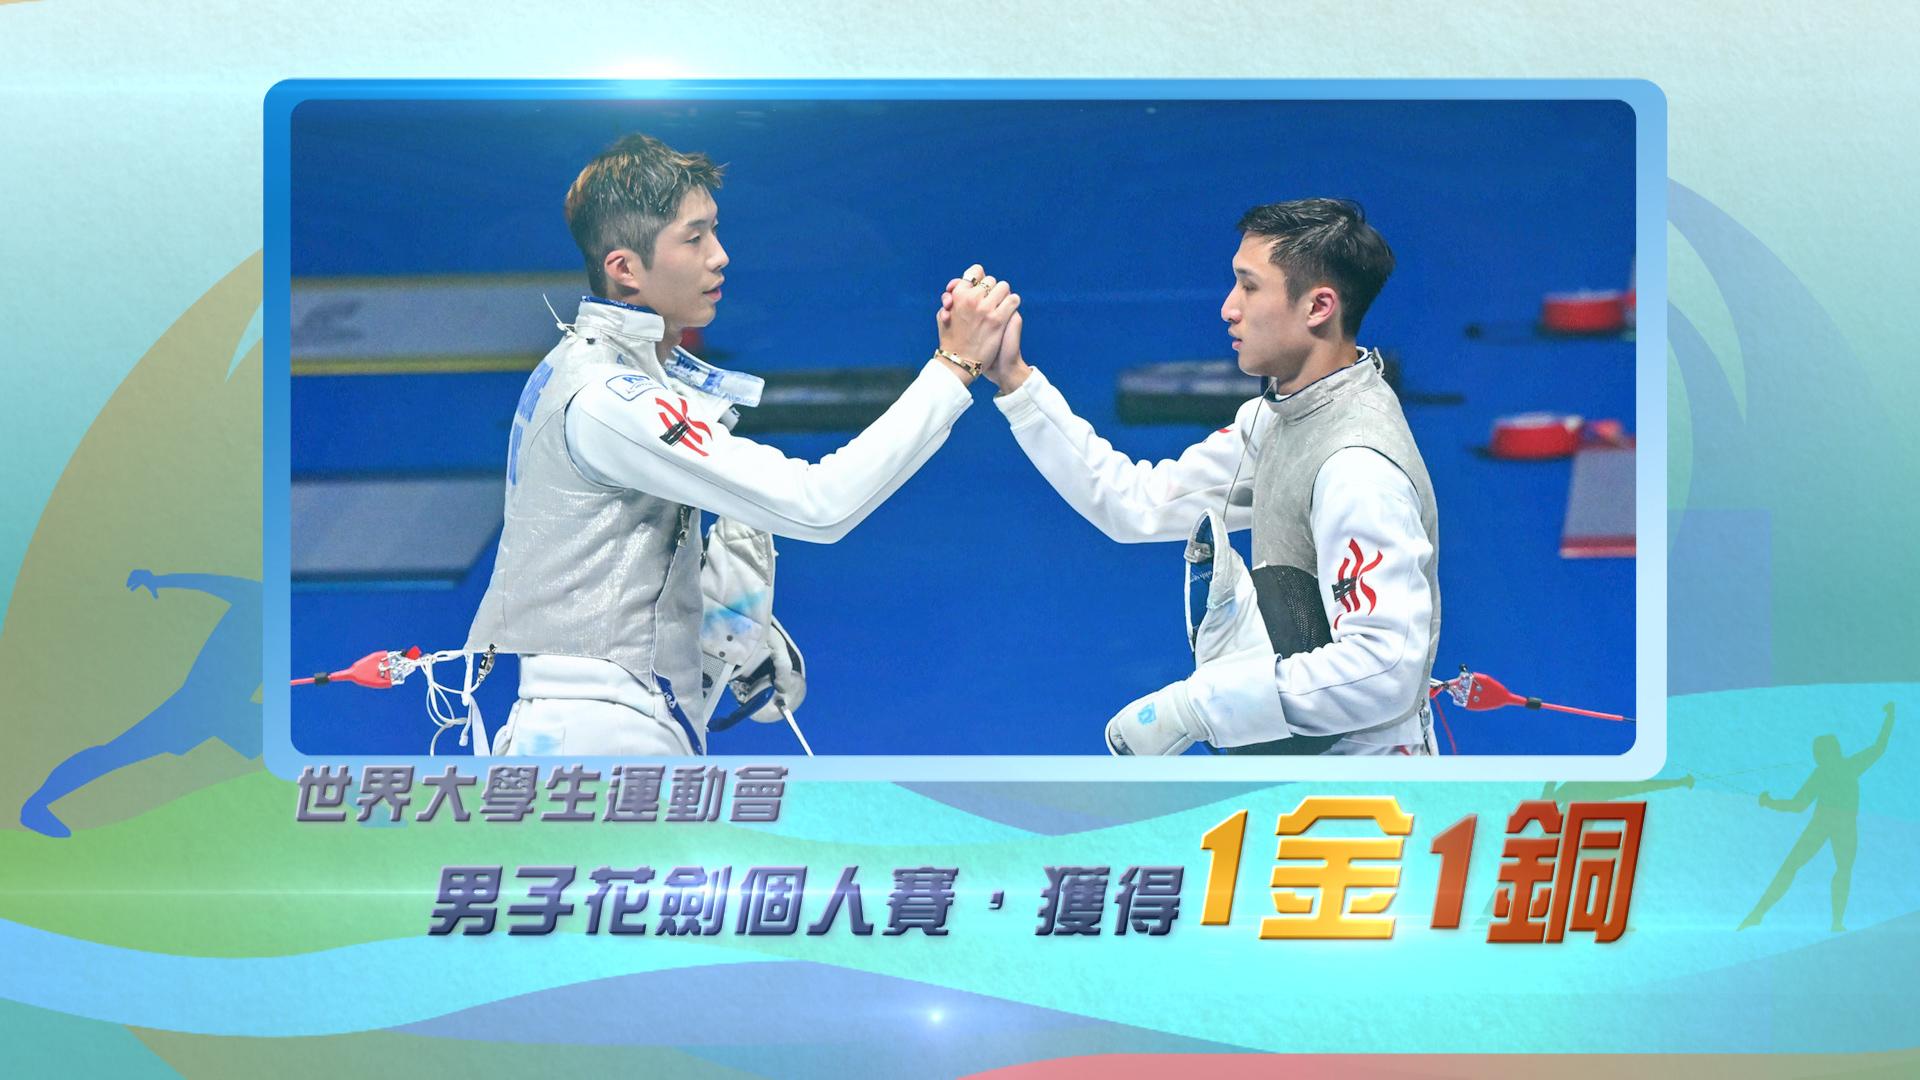 香港劍擊代表張家朗、蔡俊彥<br>男子花劍個人賽獲得1金1銅！